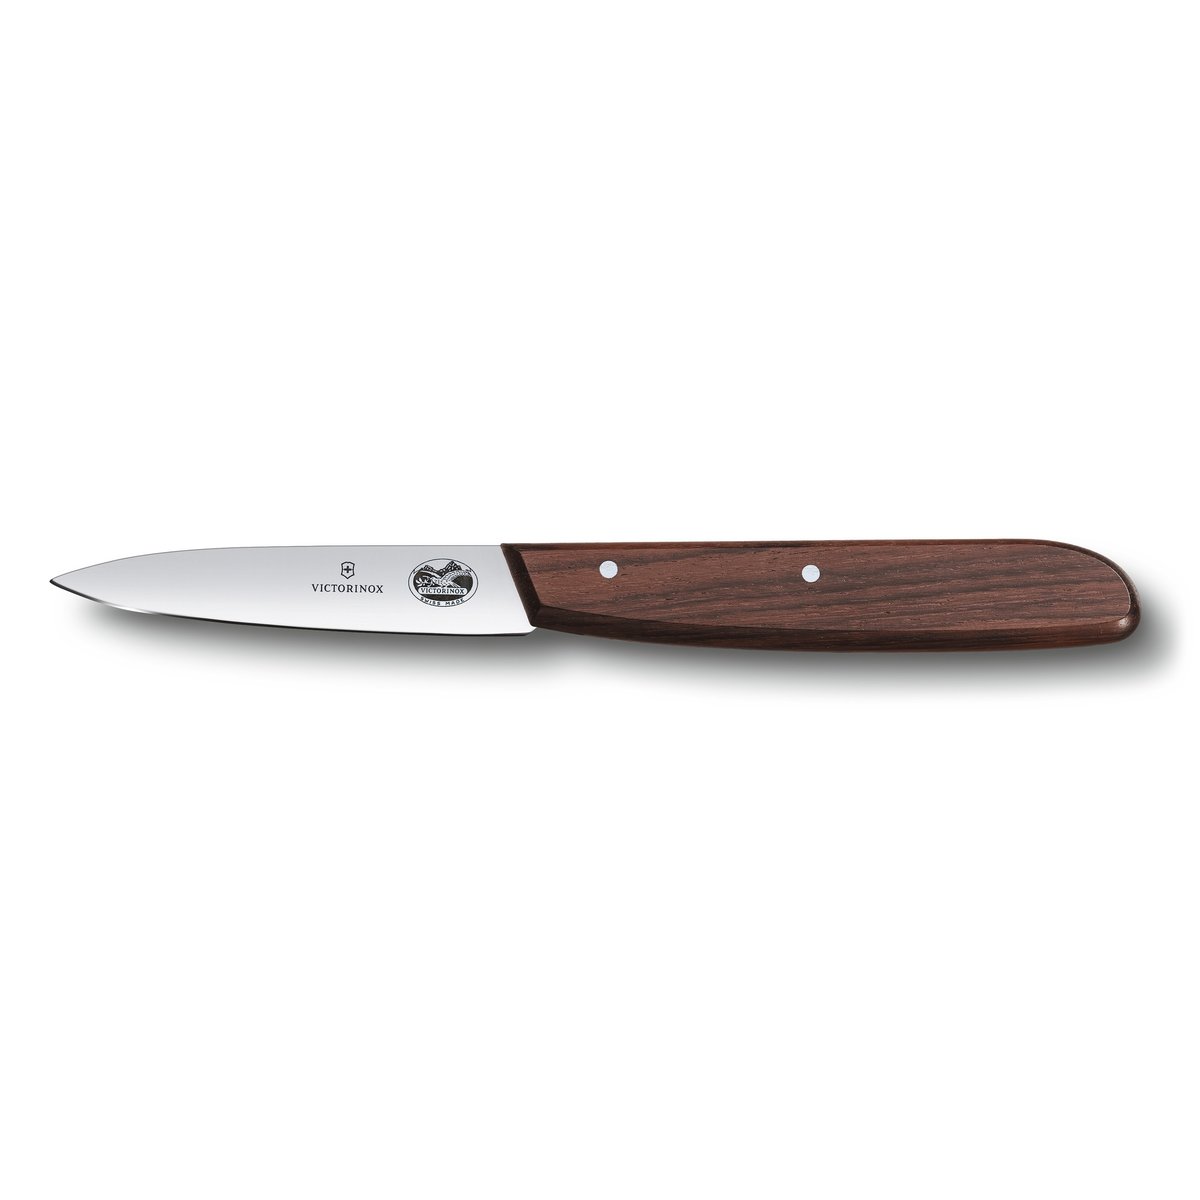 Victorinox Wood universalkniv tandet 8 cm Rustfrit stål/Ahorn (7611160501912)